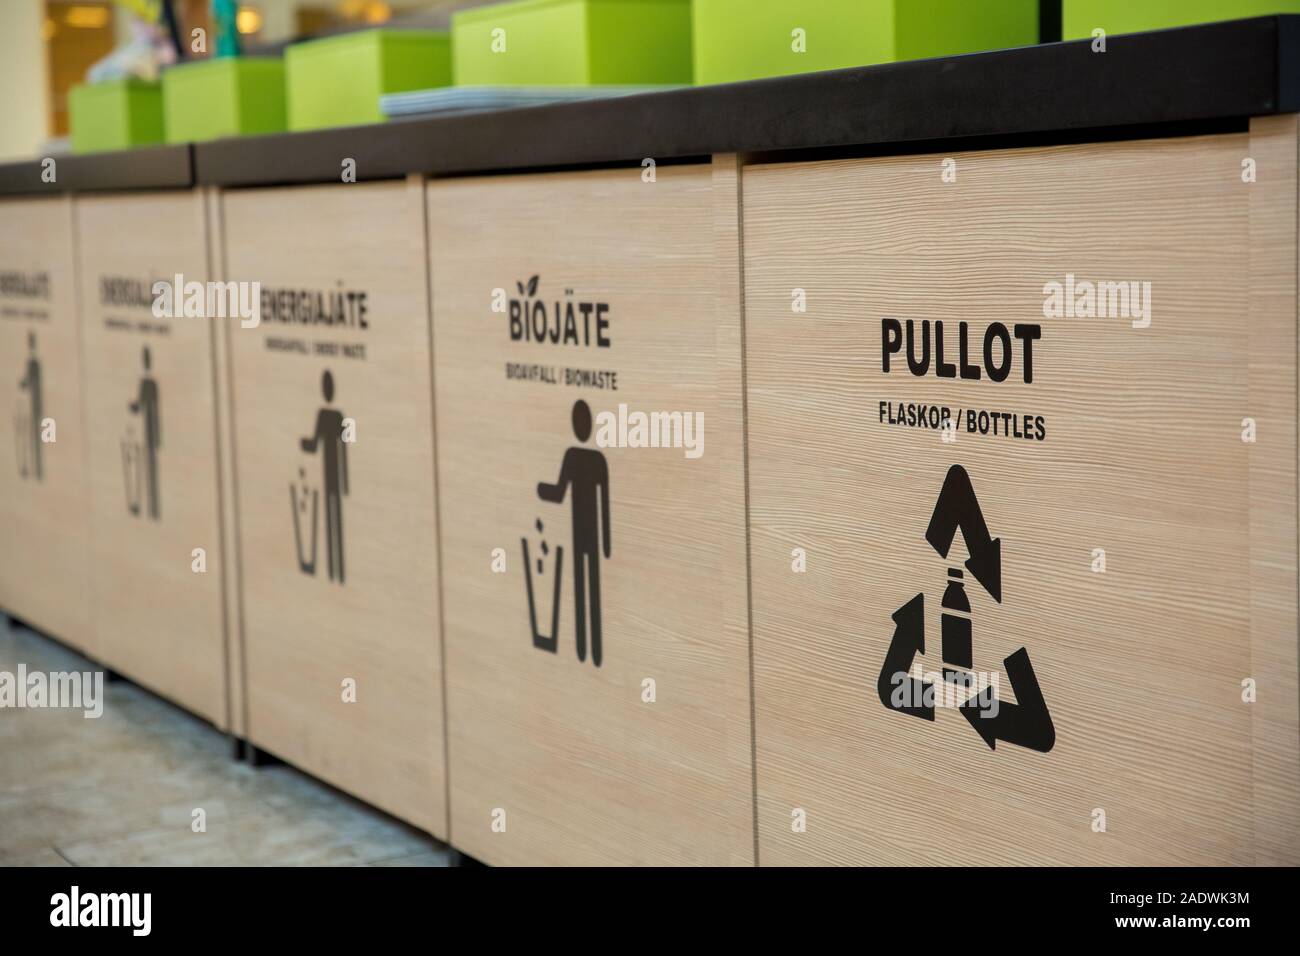 Mueble contenedor para basura areas de fast food - Superficie